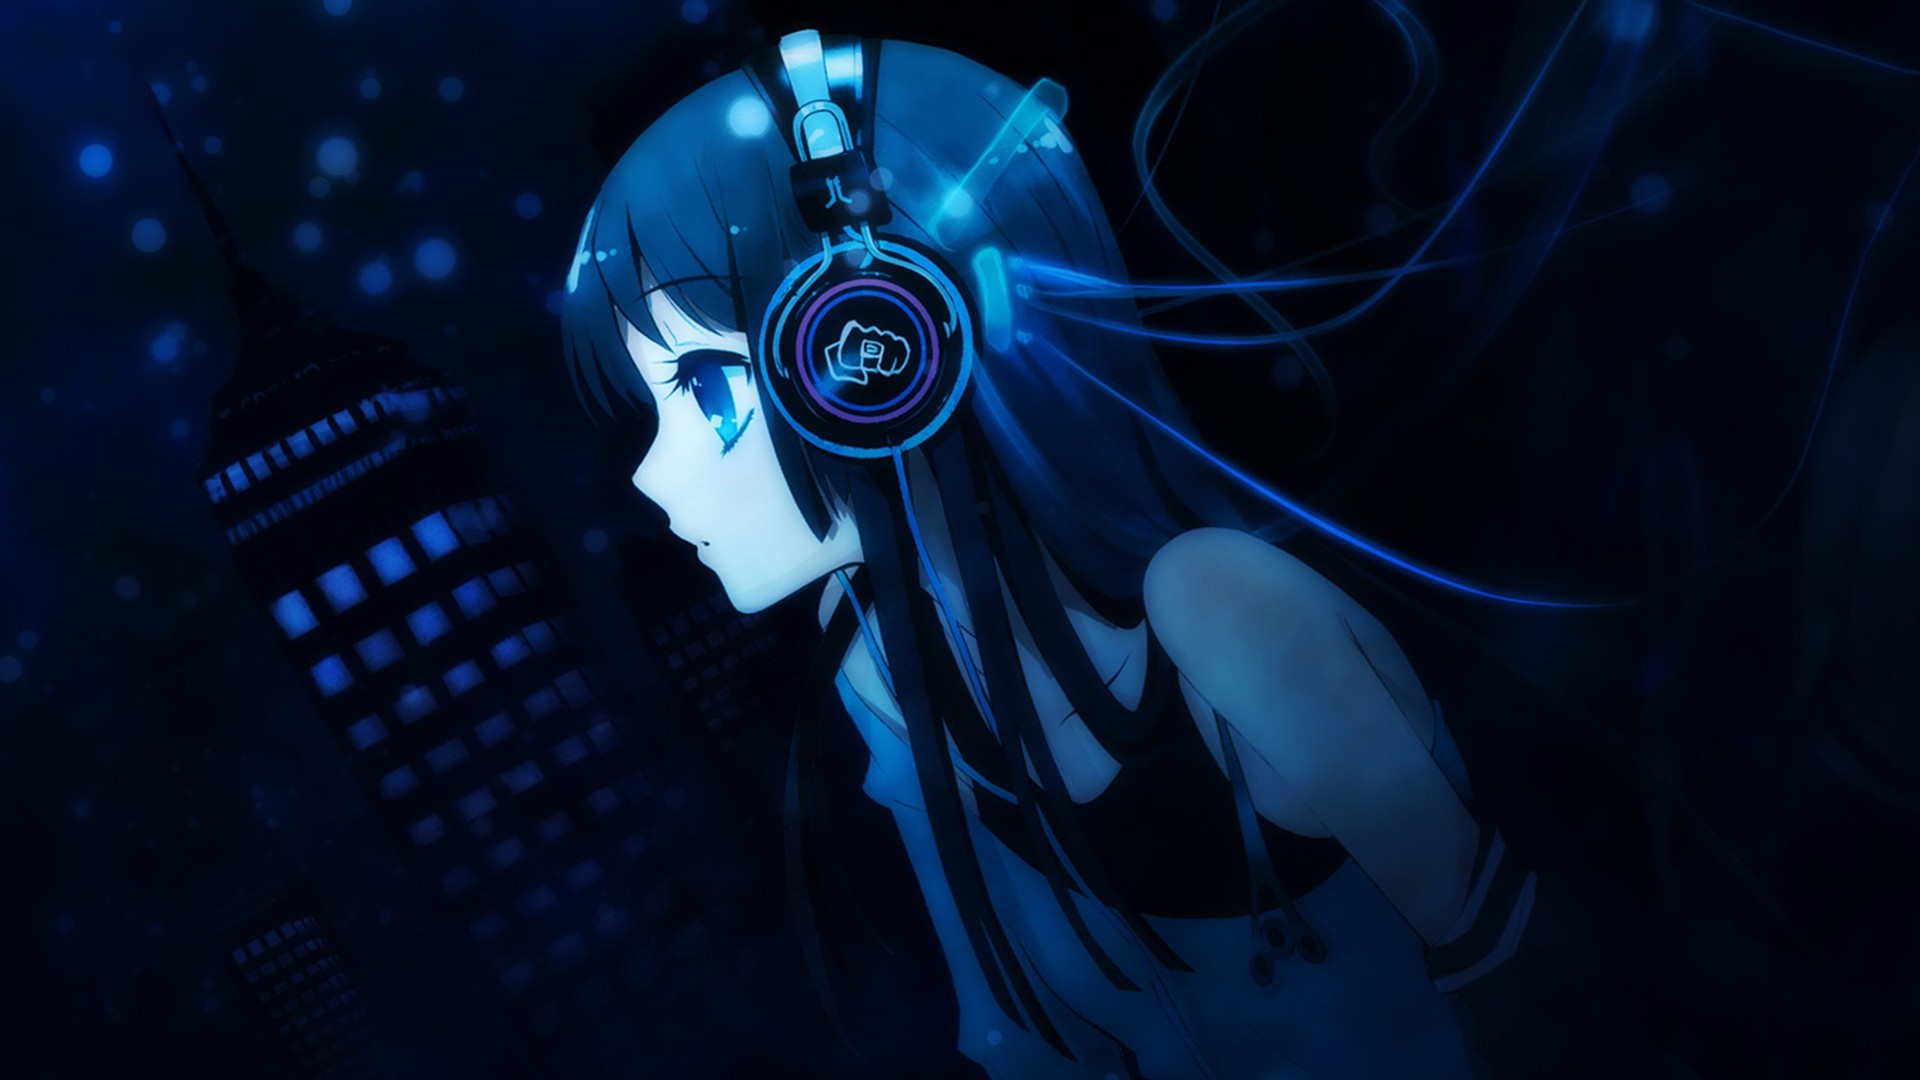 Anime EDM music + 36 Songs For Video 2023 🎵